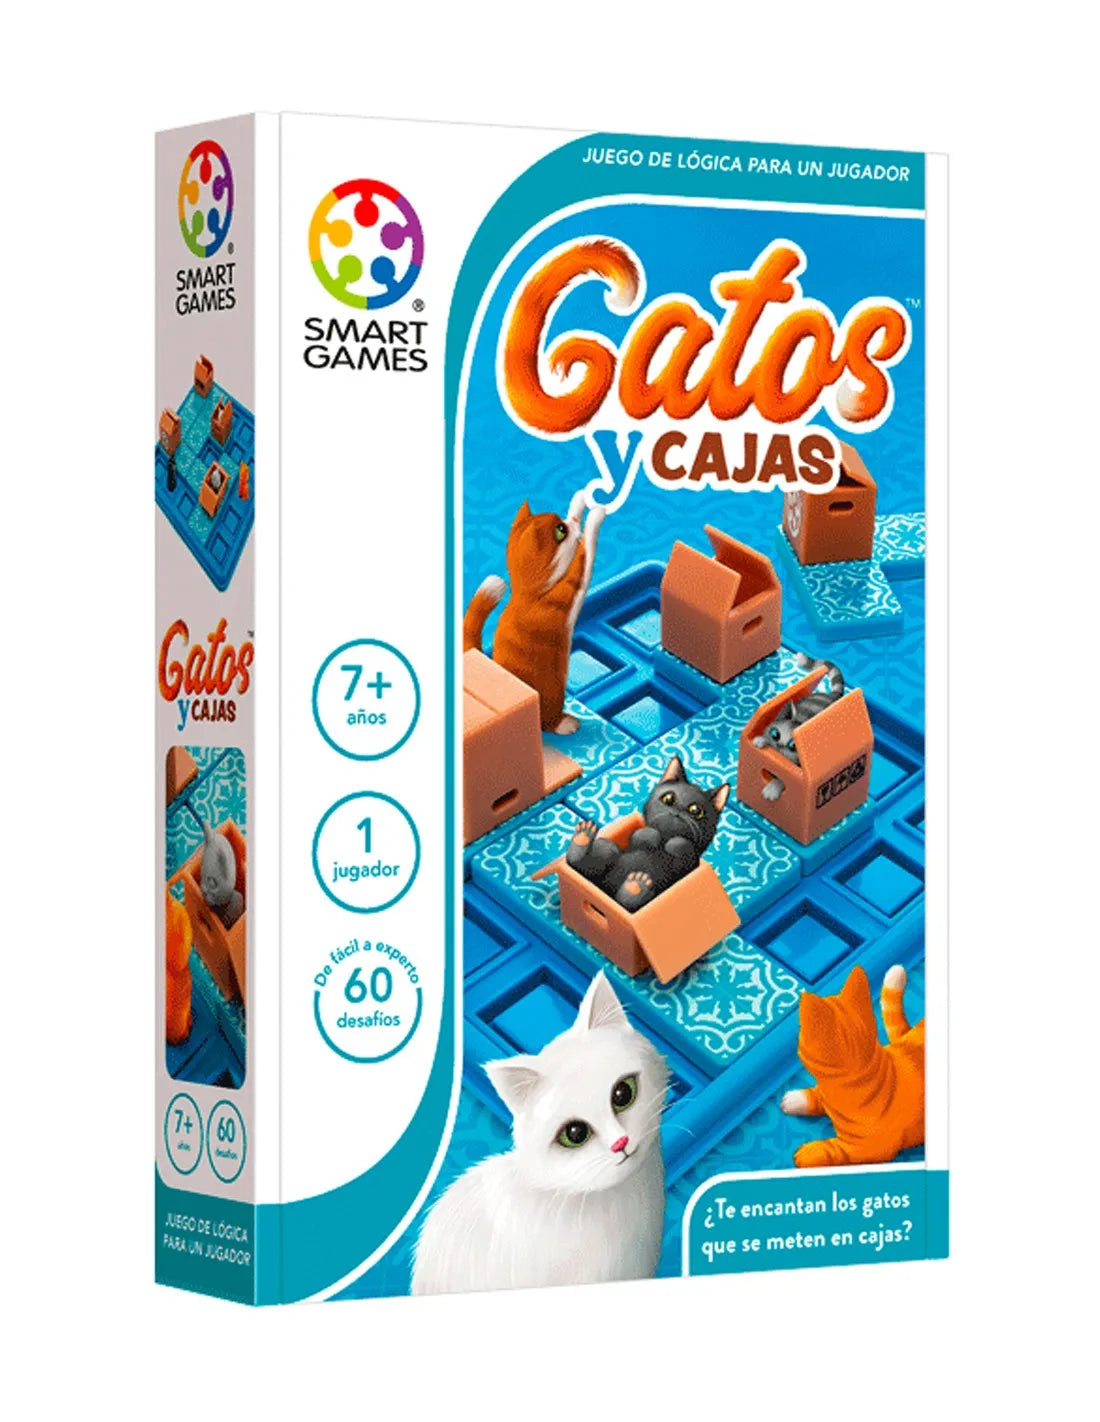 Gatos y cajas